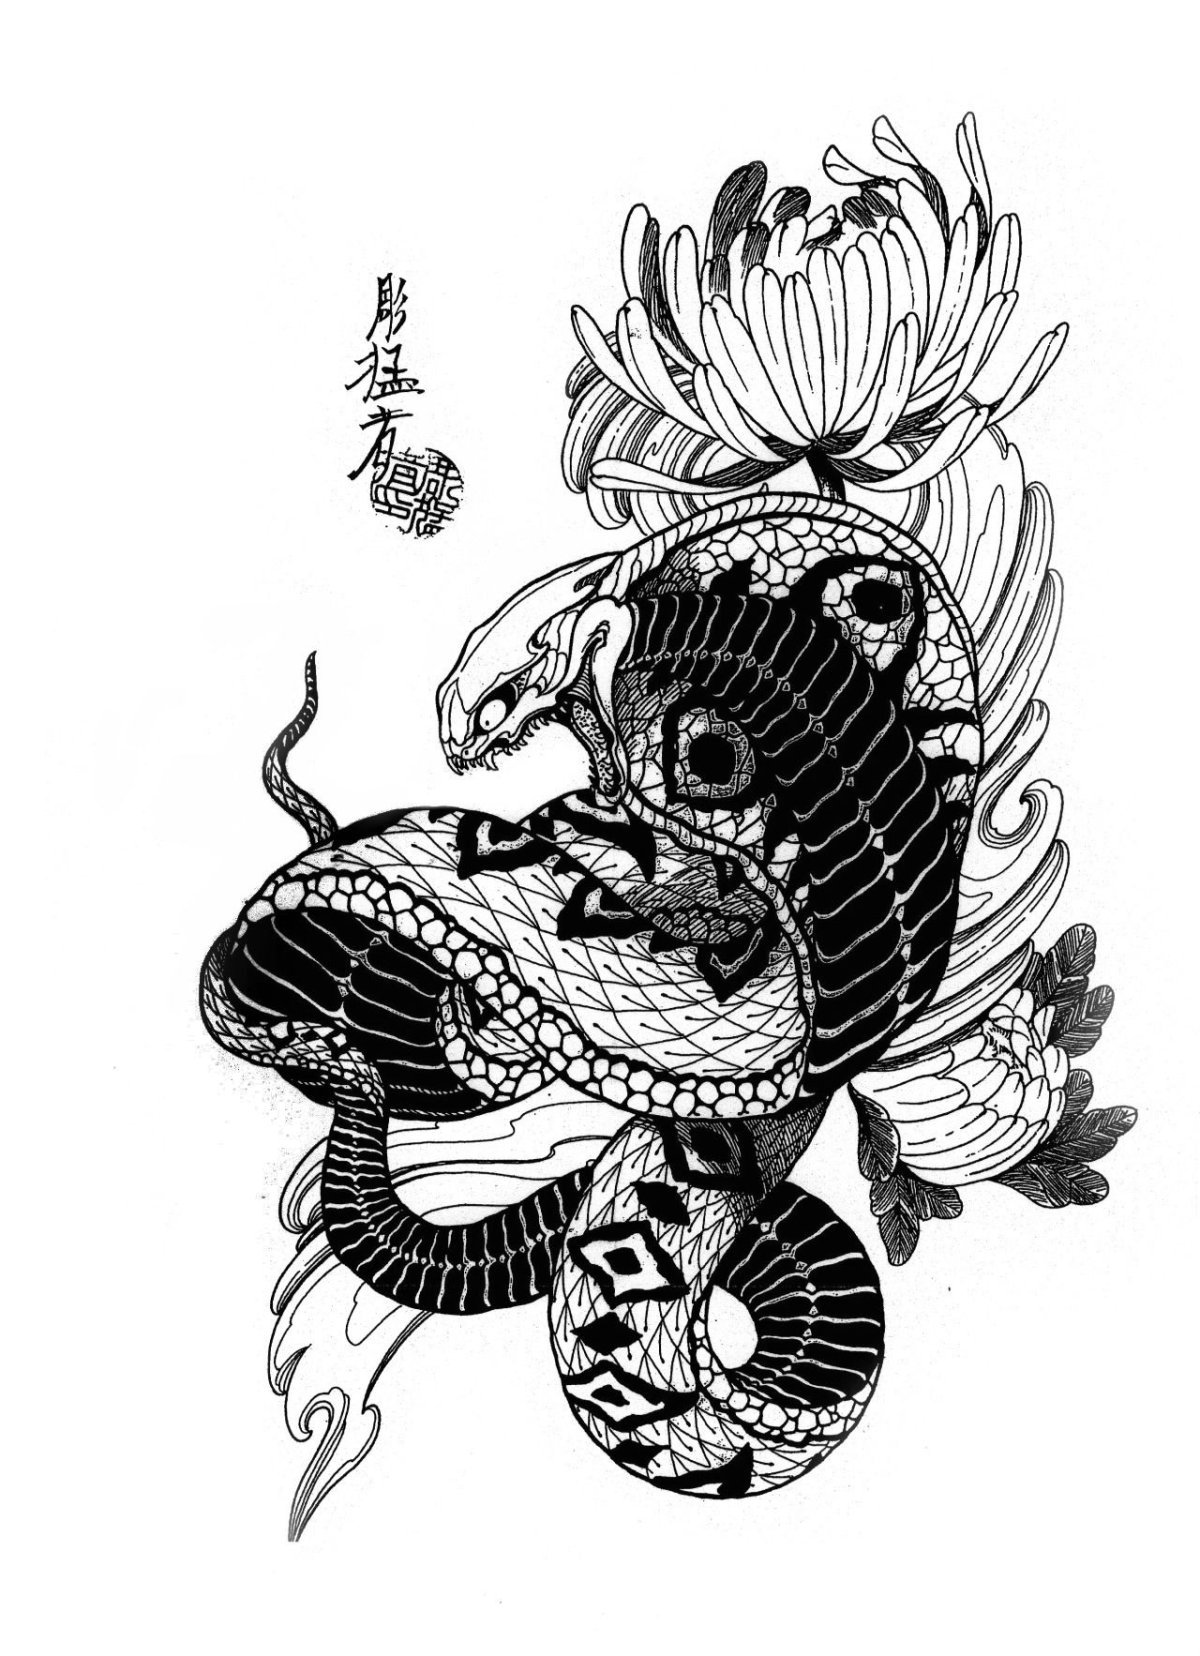 Японские тату: эскизы, значение, для мужчин, рукав, на руке, стили, драконы, маски, карпы, для девушек